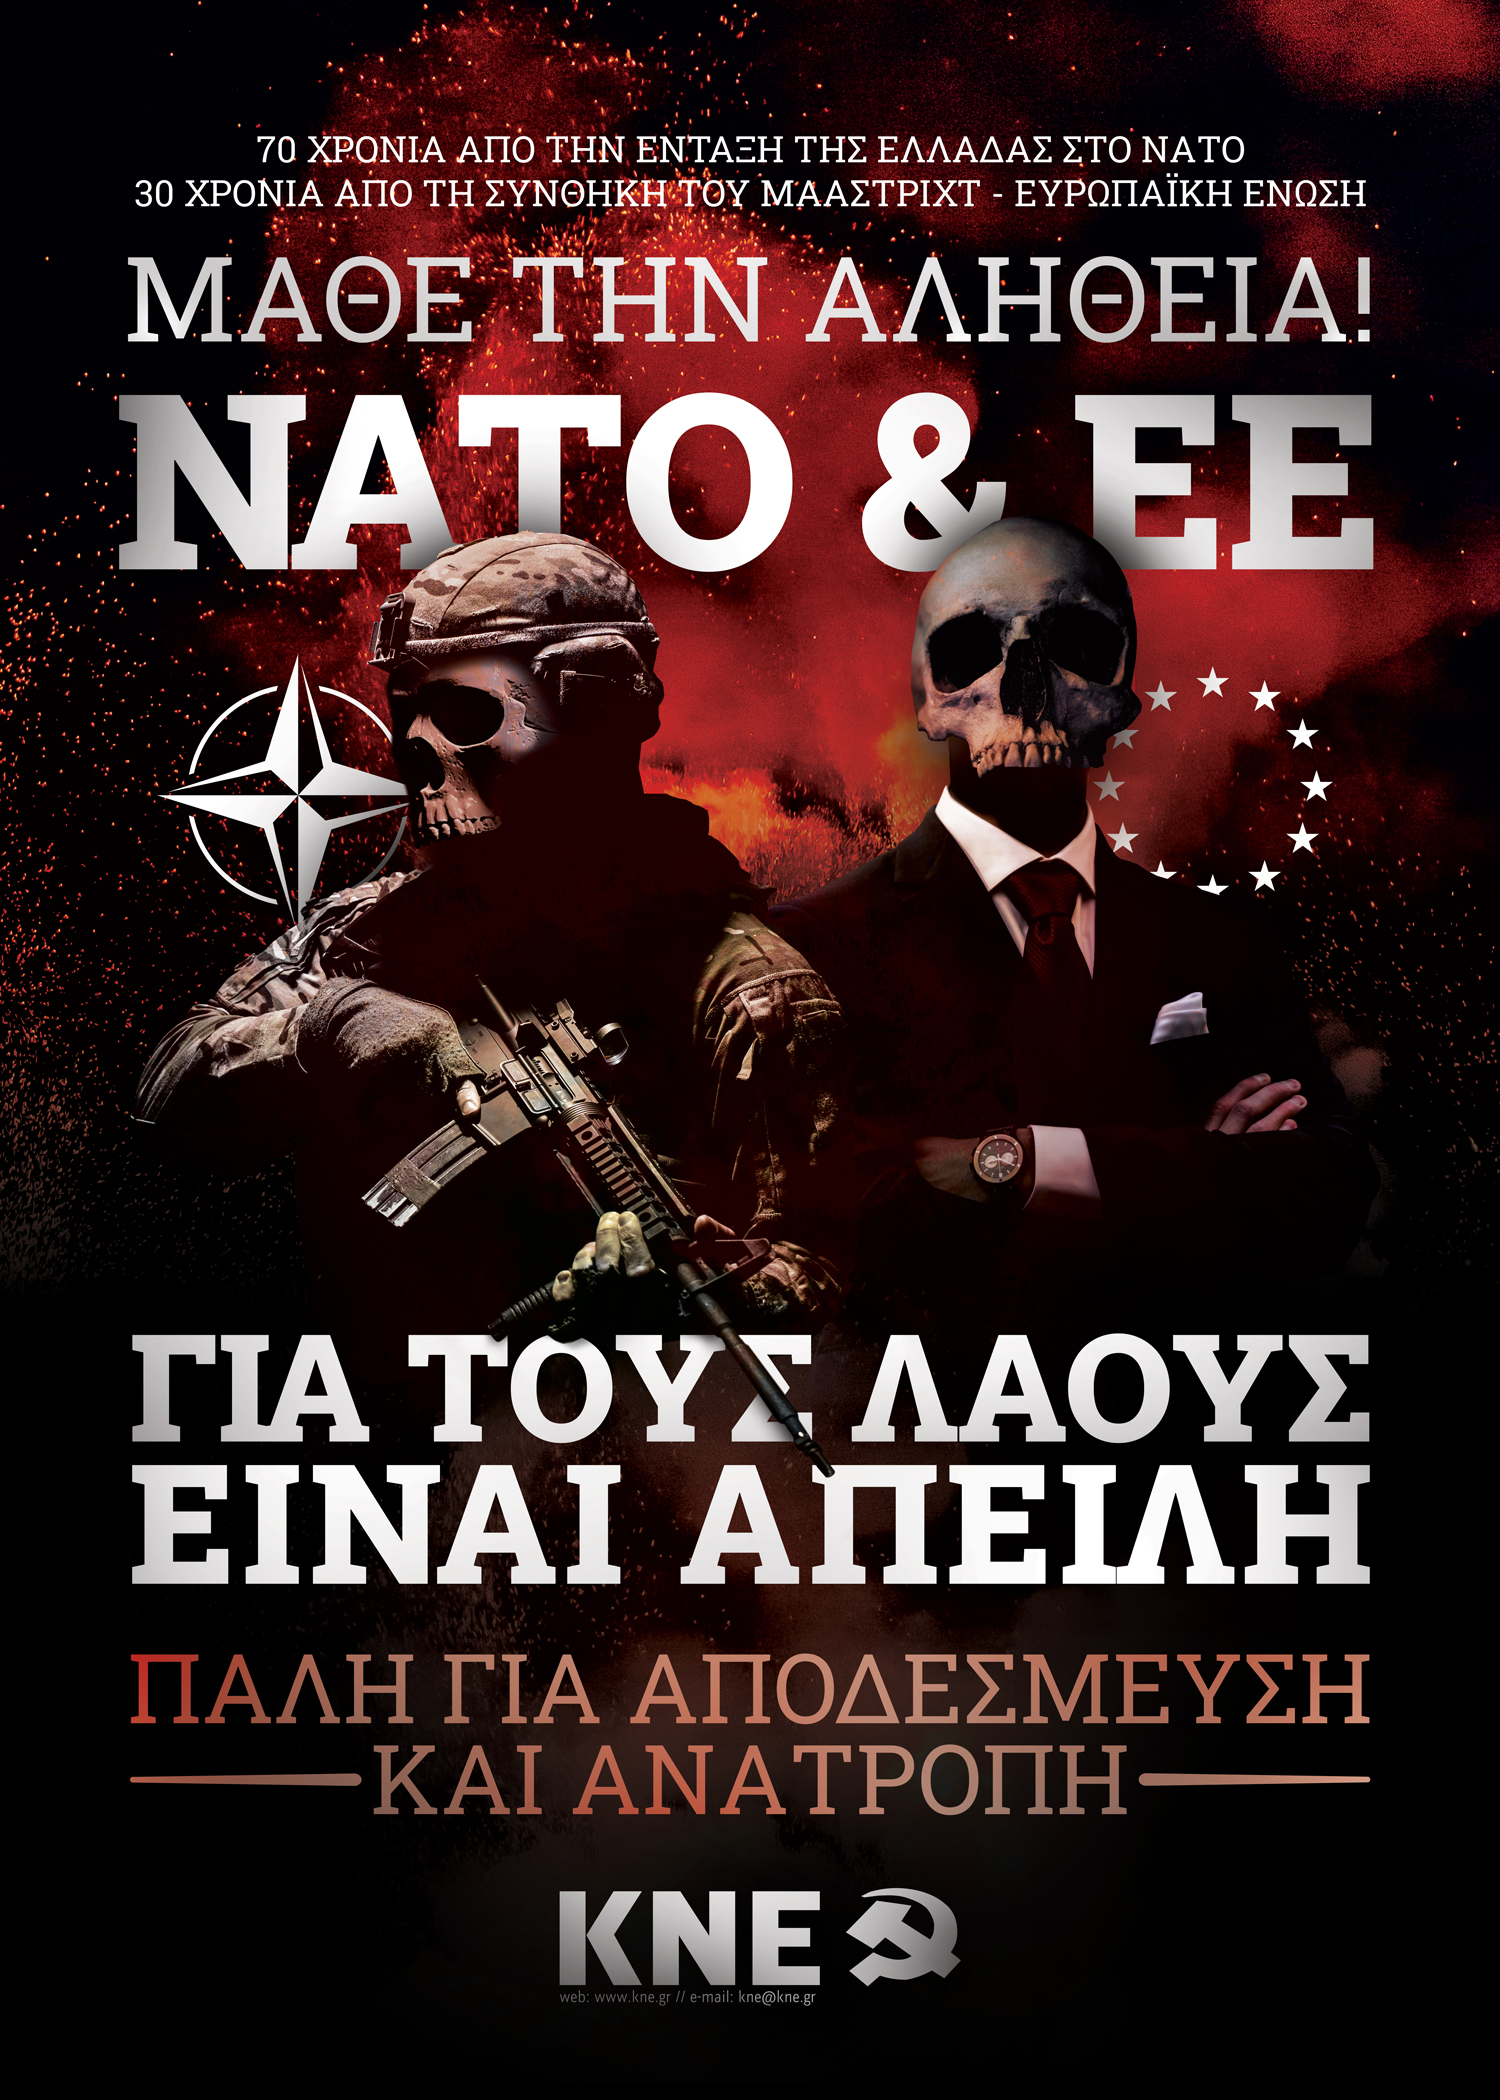 Αφίσα για τη μαυρη επέτειο των 70 χρόνων ΝΑΤΟ - 30 χρόνων ΕΕ